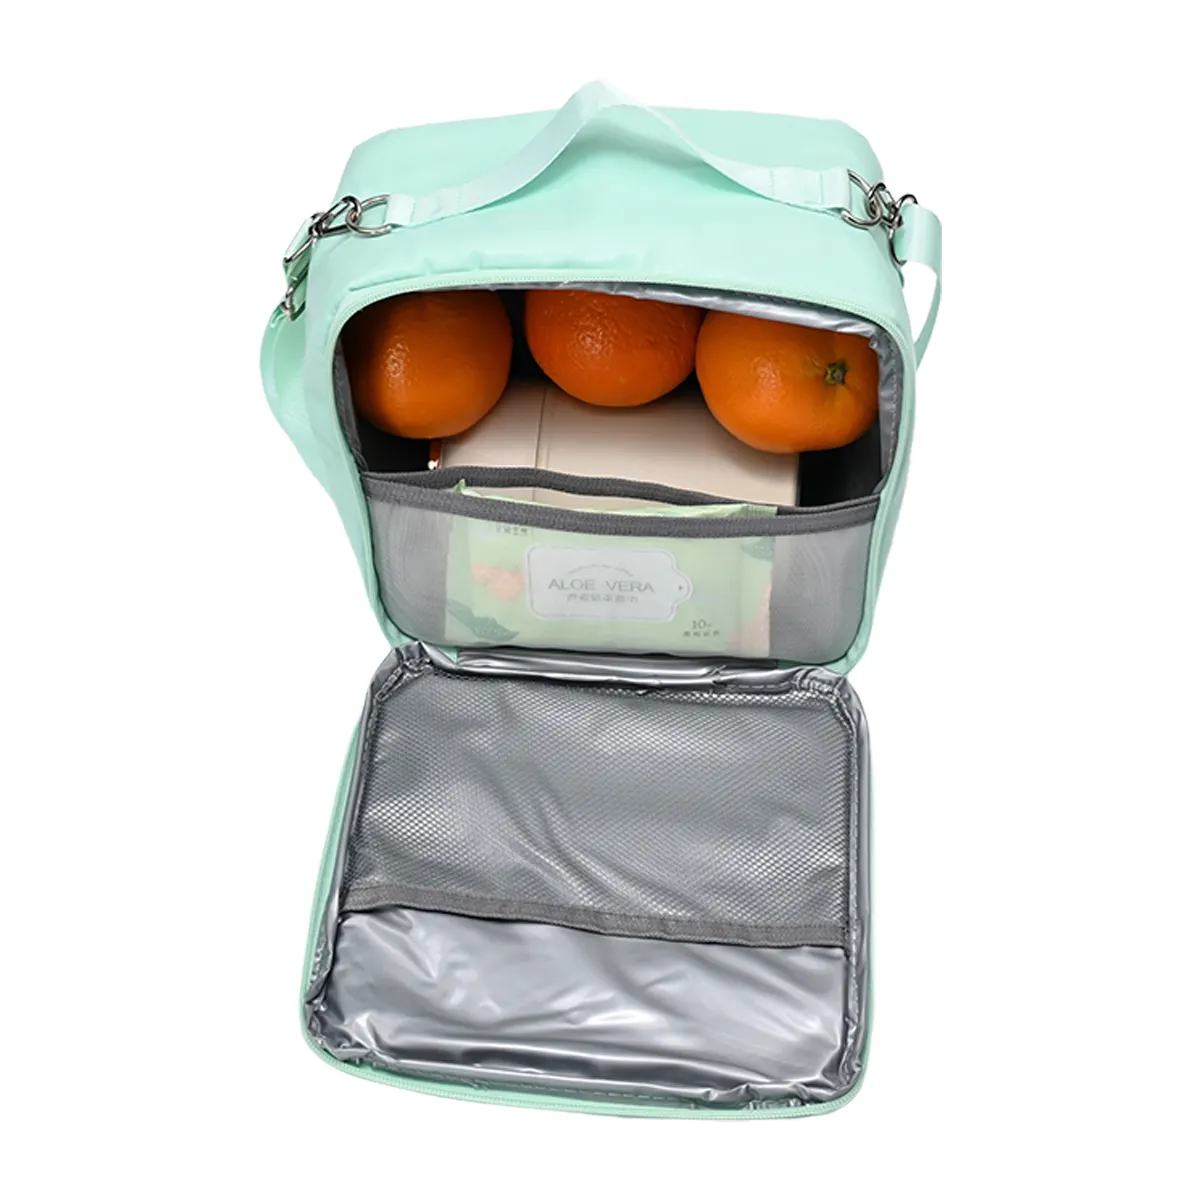 Preço baixo Oem almoço sacos de ombro único sacos mais frios para meninas isolamento térmico